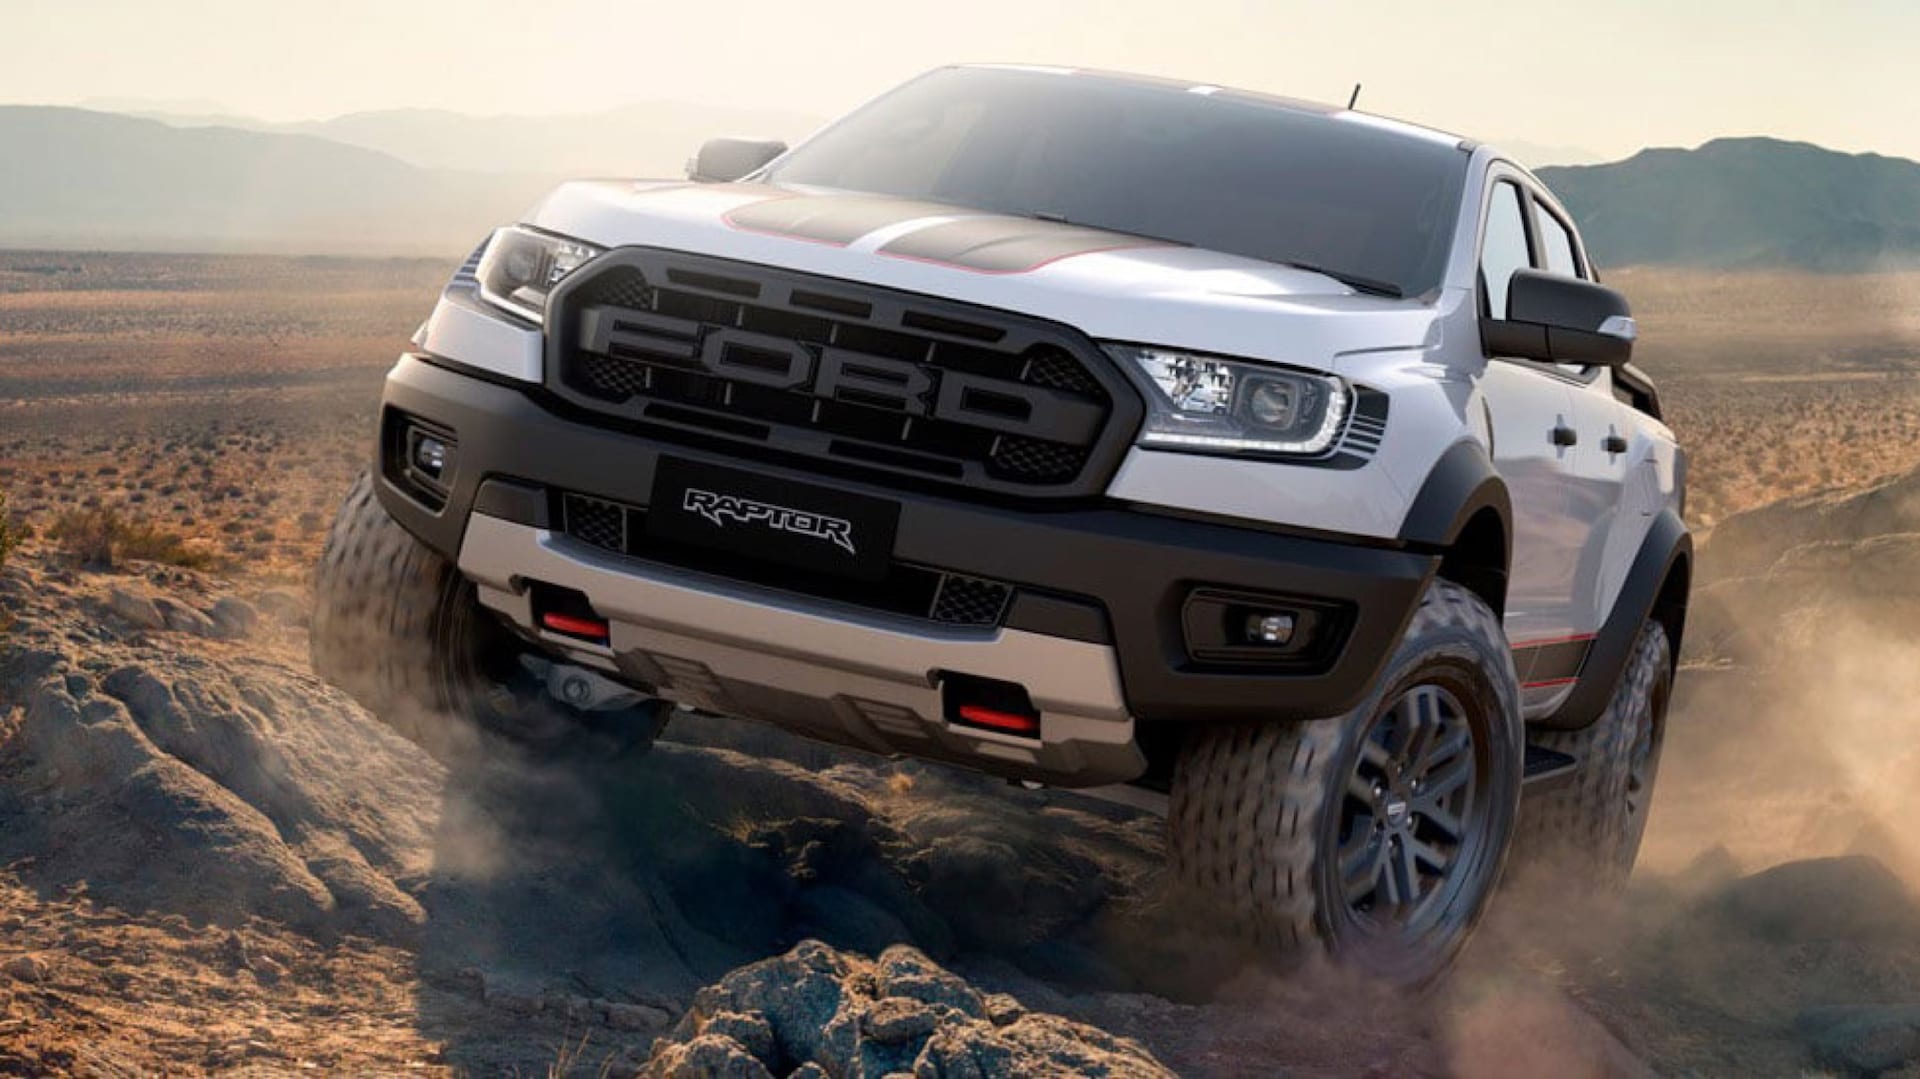 Australia's Ford Ranger Raptor Off-Road Pickup Taken to the Power of X